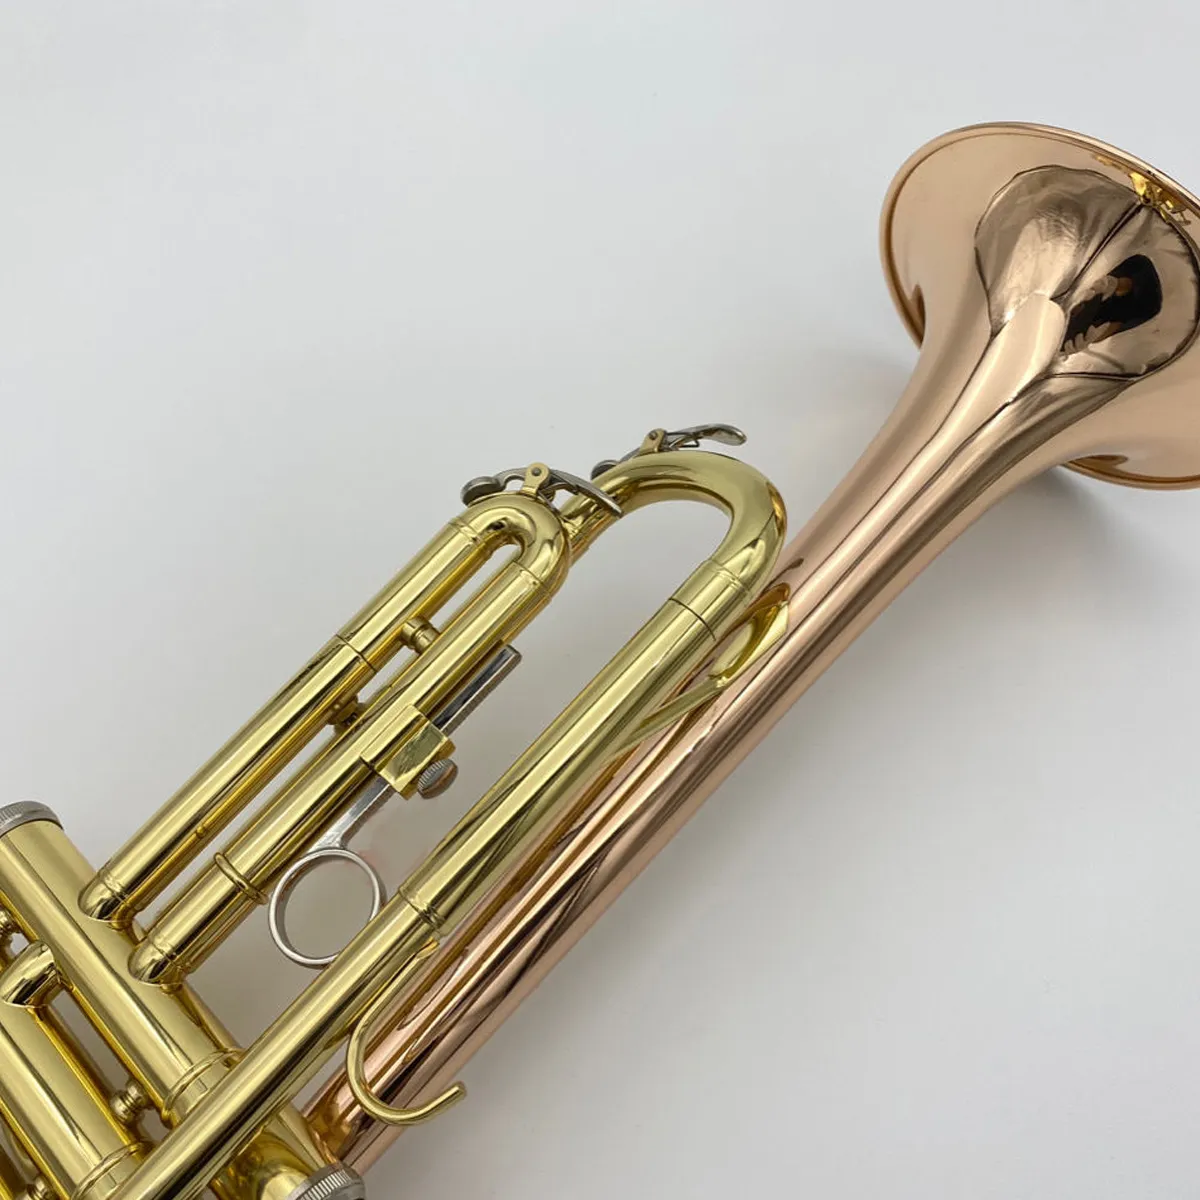 Instrumento de trompete profissional de alta qualidade para iniciantes tocarem bronze fósforo banhado a ouro com punho reverso trompete para a mão esquerda3966259